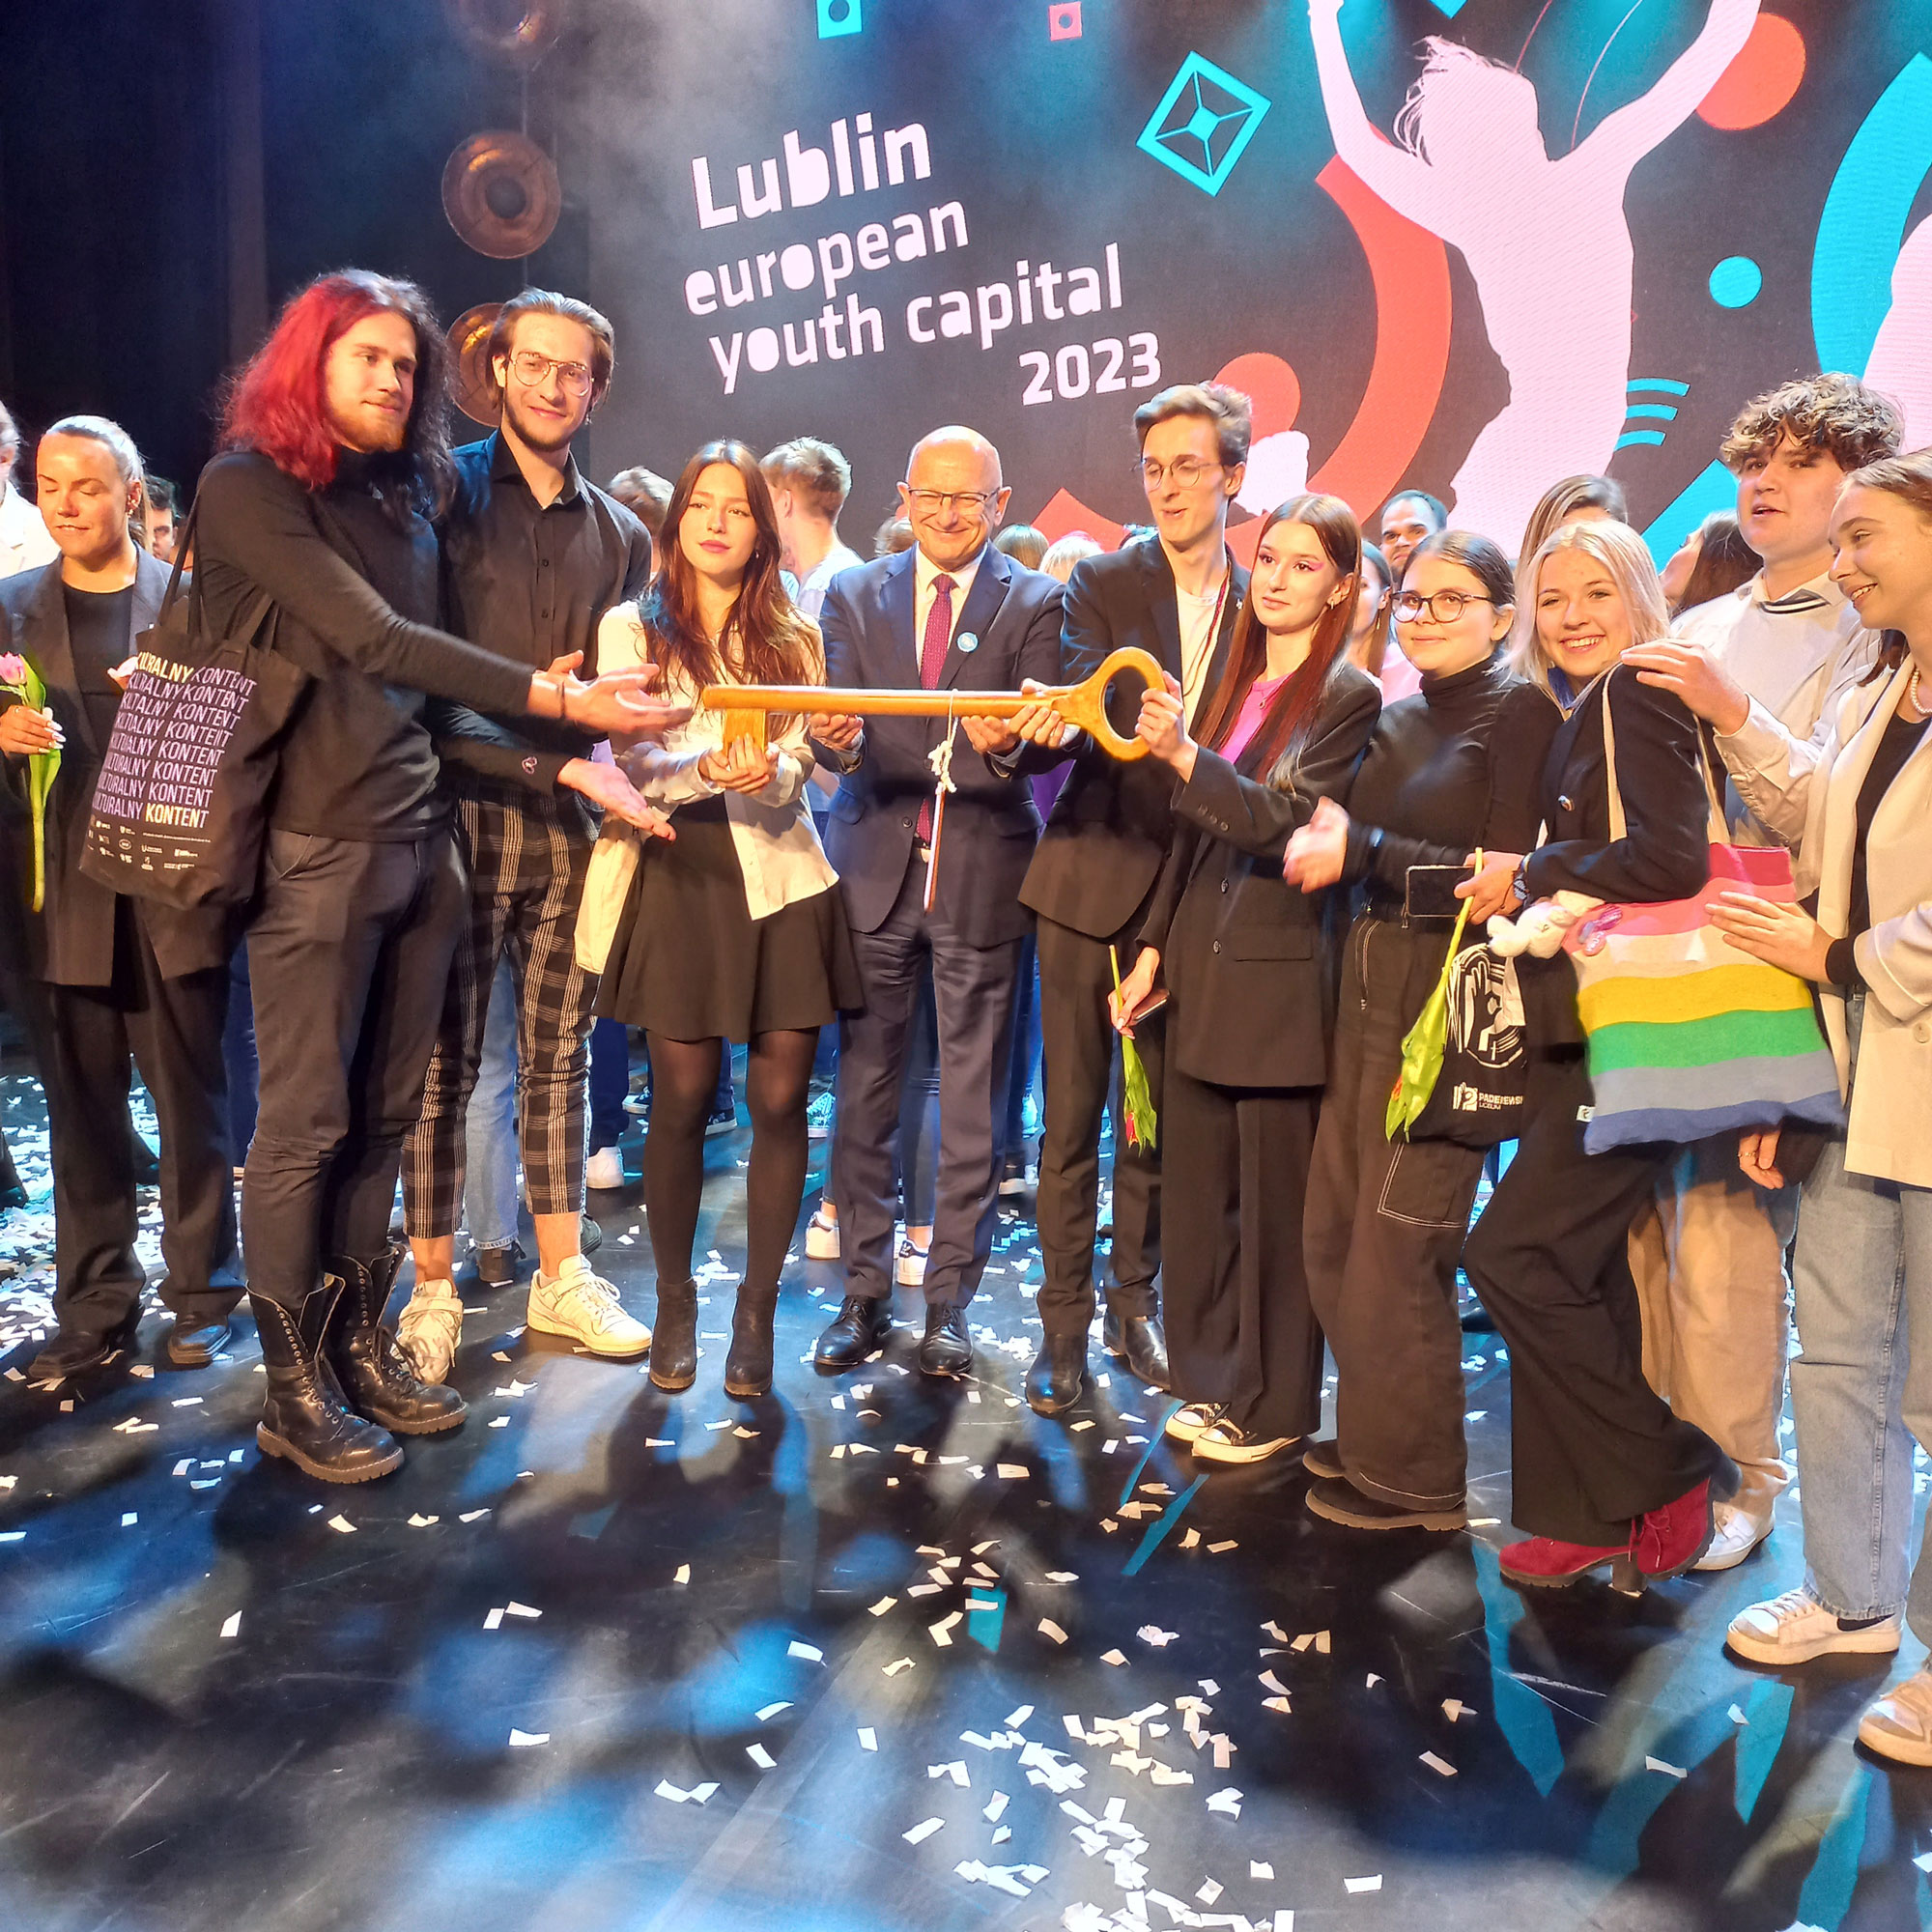 Lublin Europejską Stolicą Młodzieży 2023